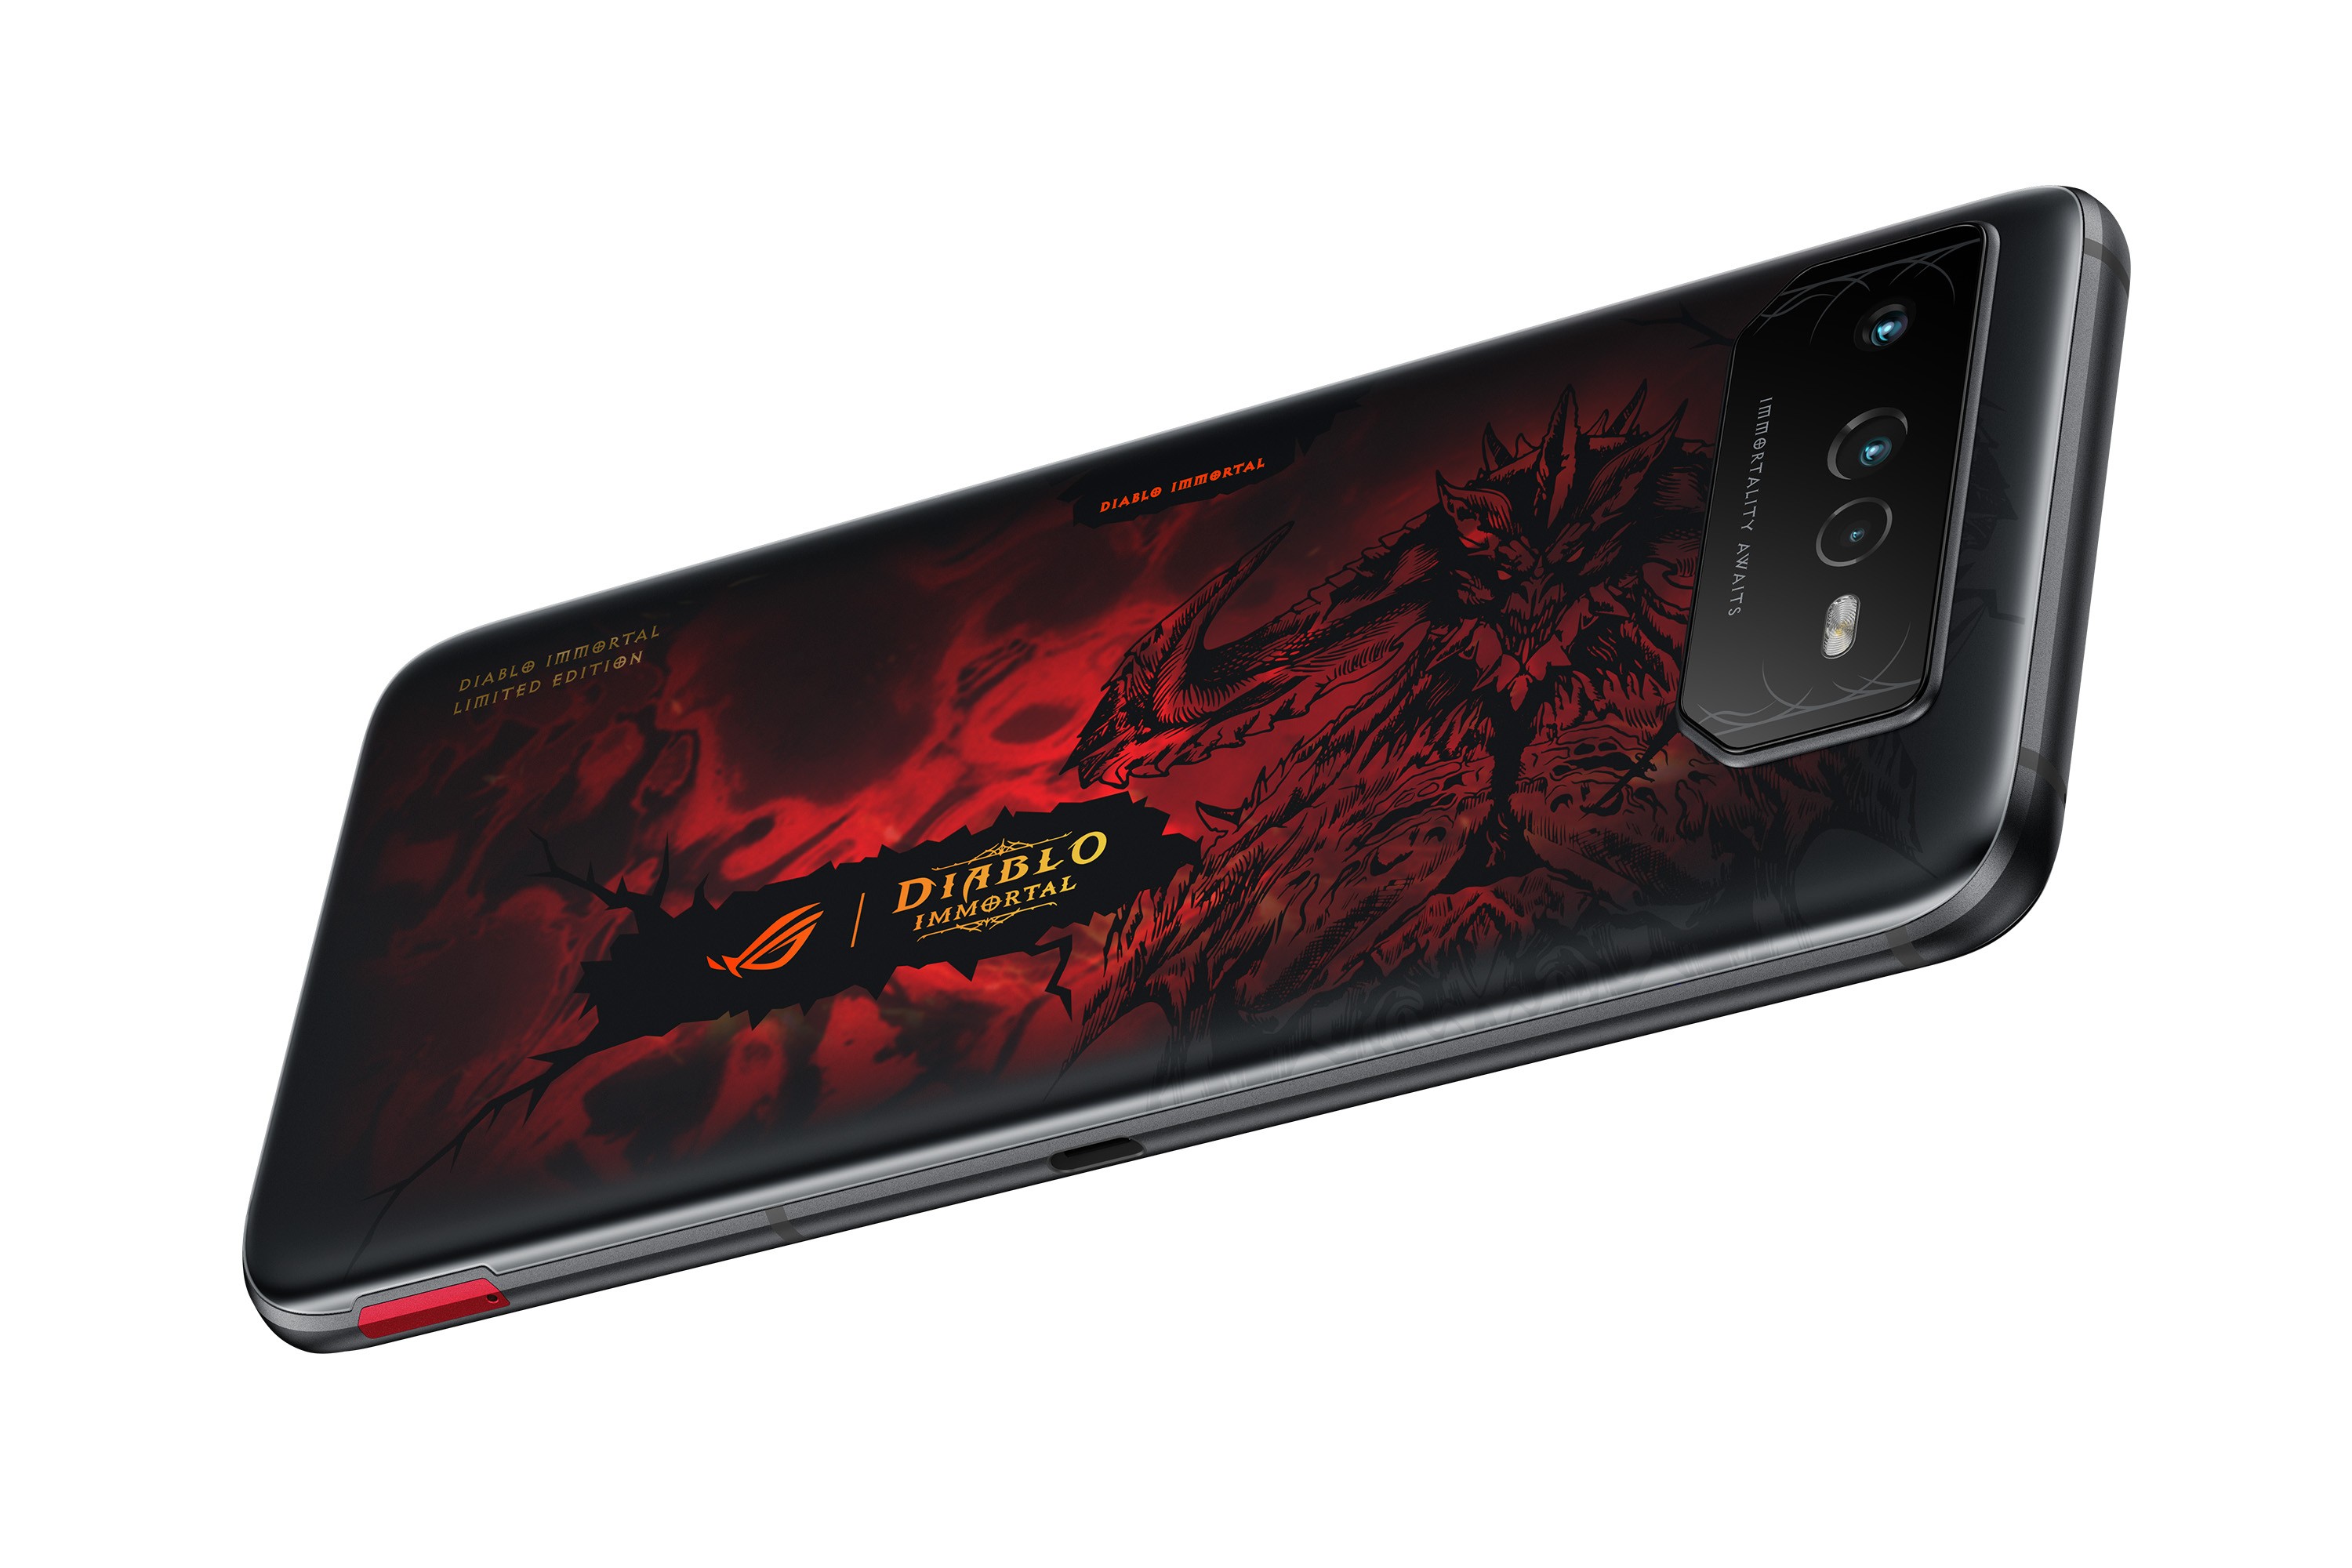 Ediția exclusivă ROG Phone 6 Diablo Immortal Edition